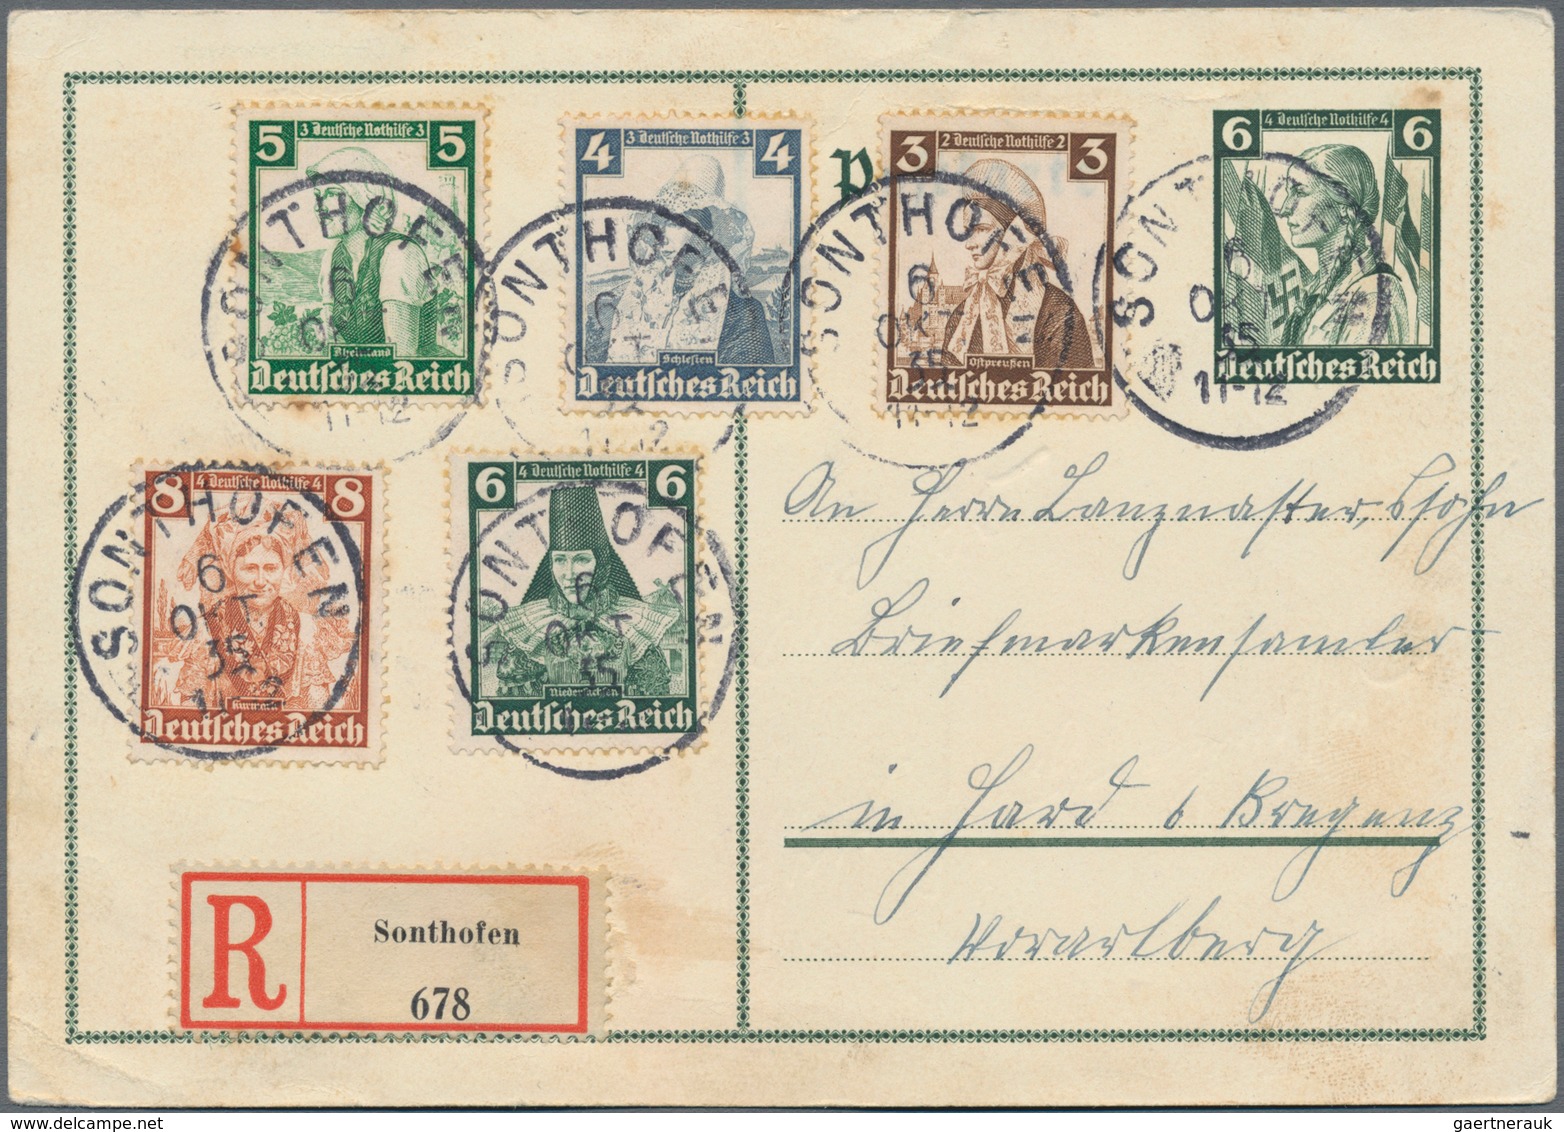 Deutsches Reich - Ganzsachen: 1872/1945 riesiger Posten von etlichen Tausend gebrauchten und ungebra